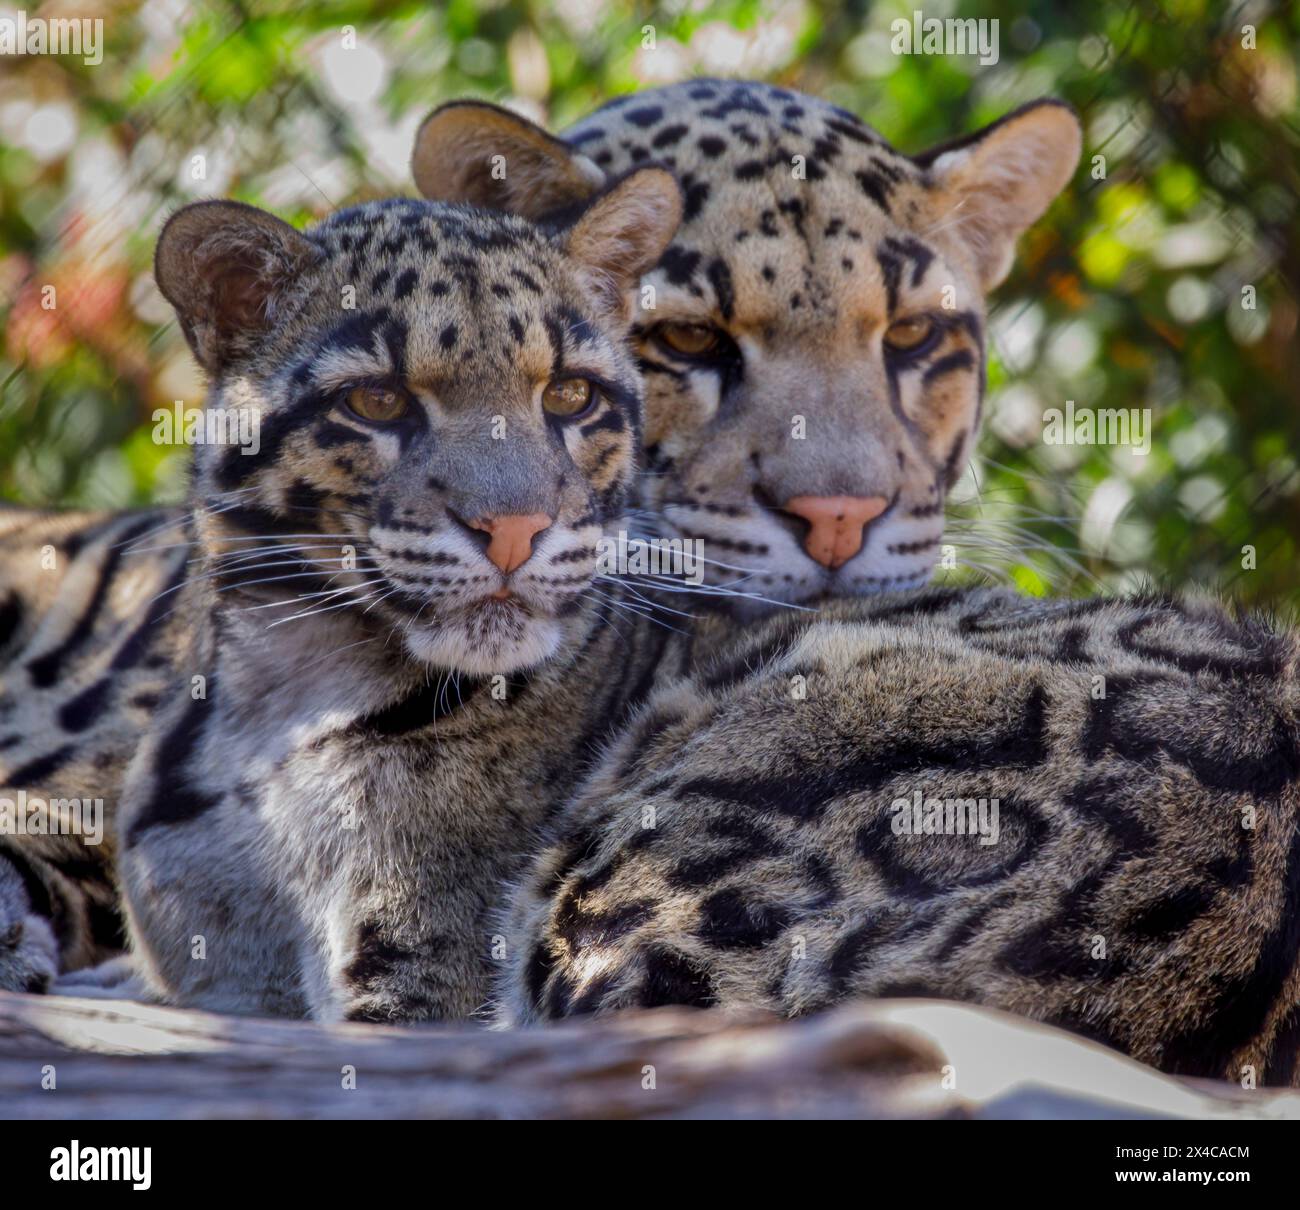 États-Unis, Arizona, Waddell, Wildlife World Zoo. Gros plan de la paire de léopards nuageux captifs. Banque D'Images